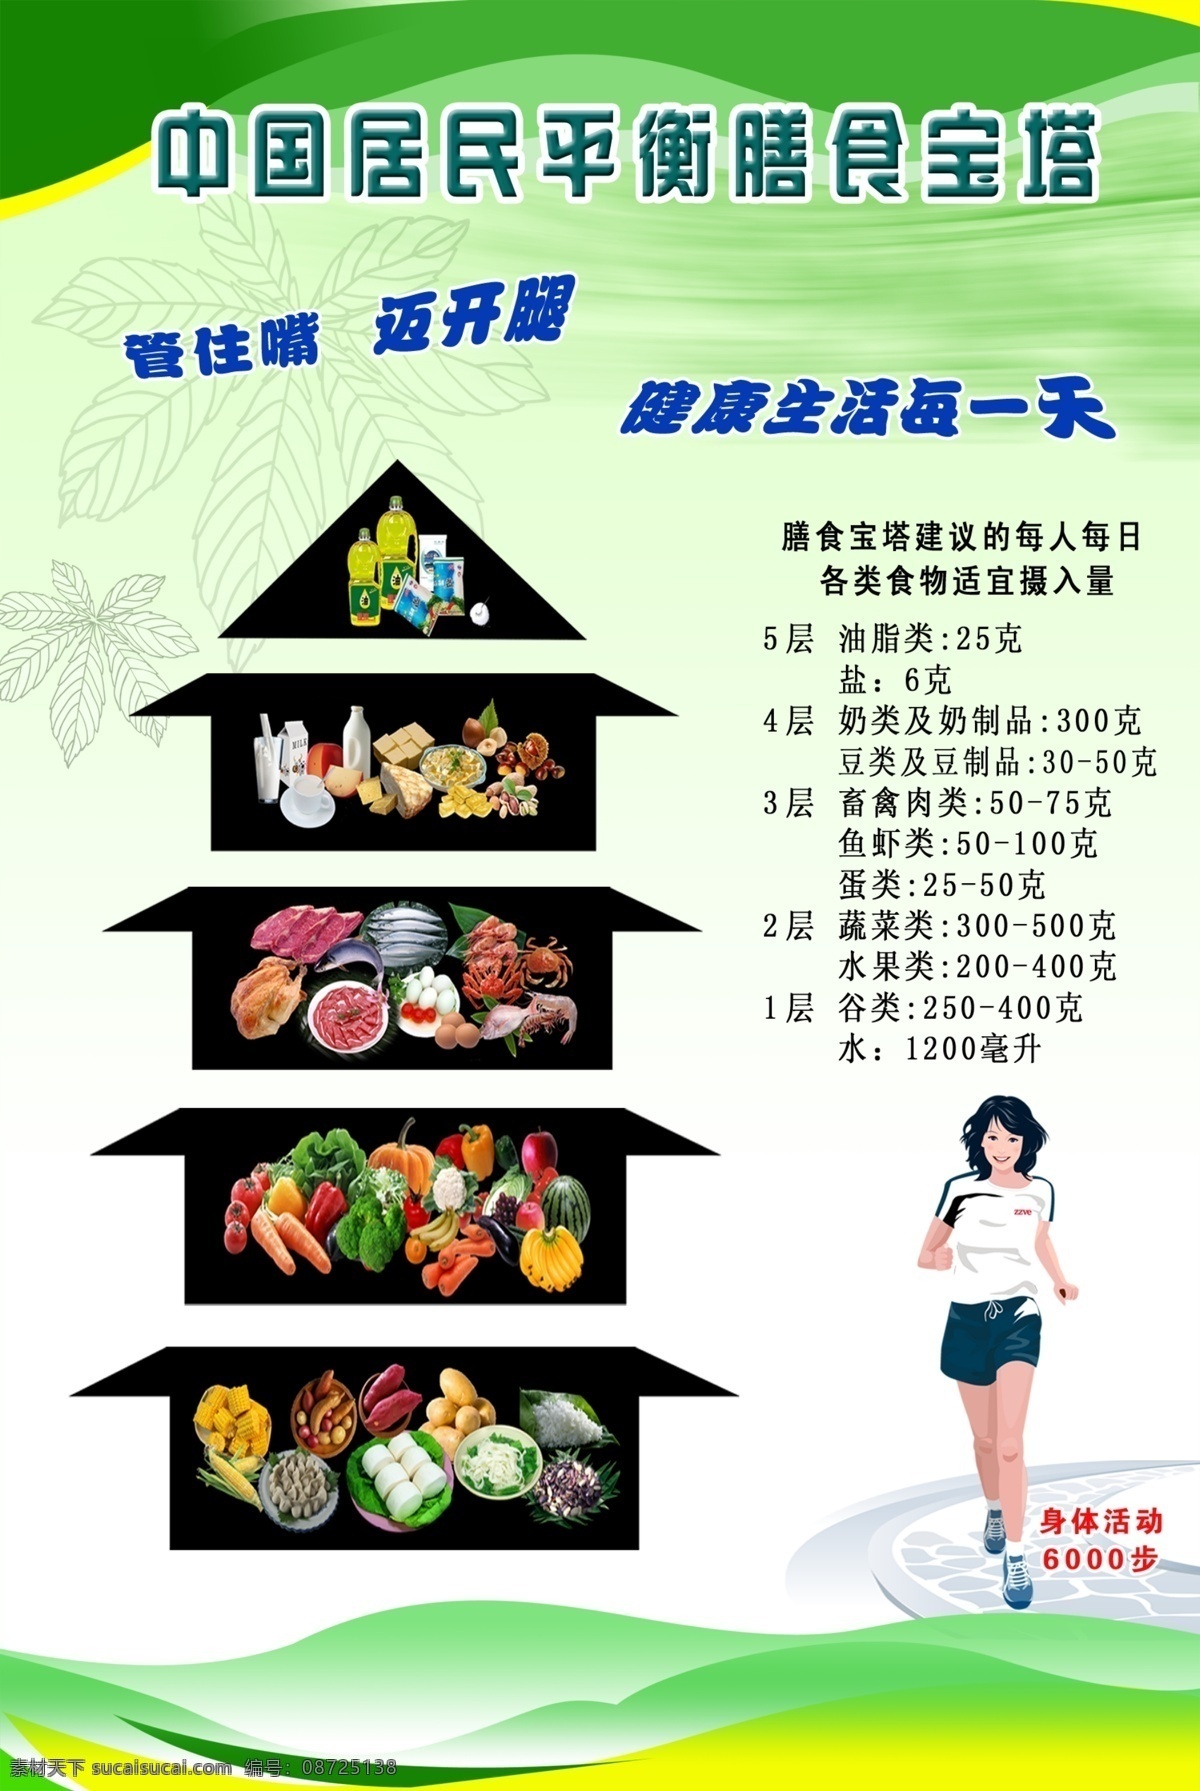 中国 居民 平衡 膳食 宝塔 营养 健康 学校橱窗海报 展板模板 膳食宝塔 健康专栏 展板背景 制度背景 展板 其他模版 广告设计模板 源文件